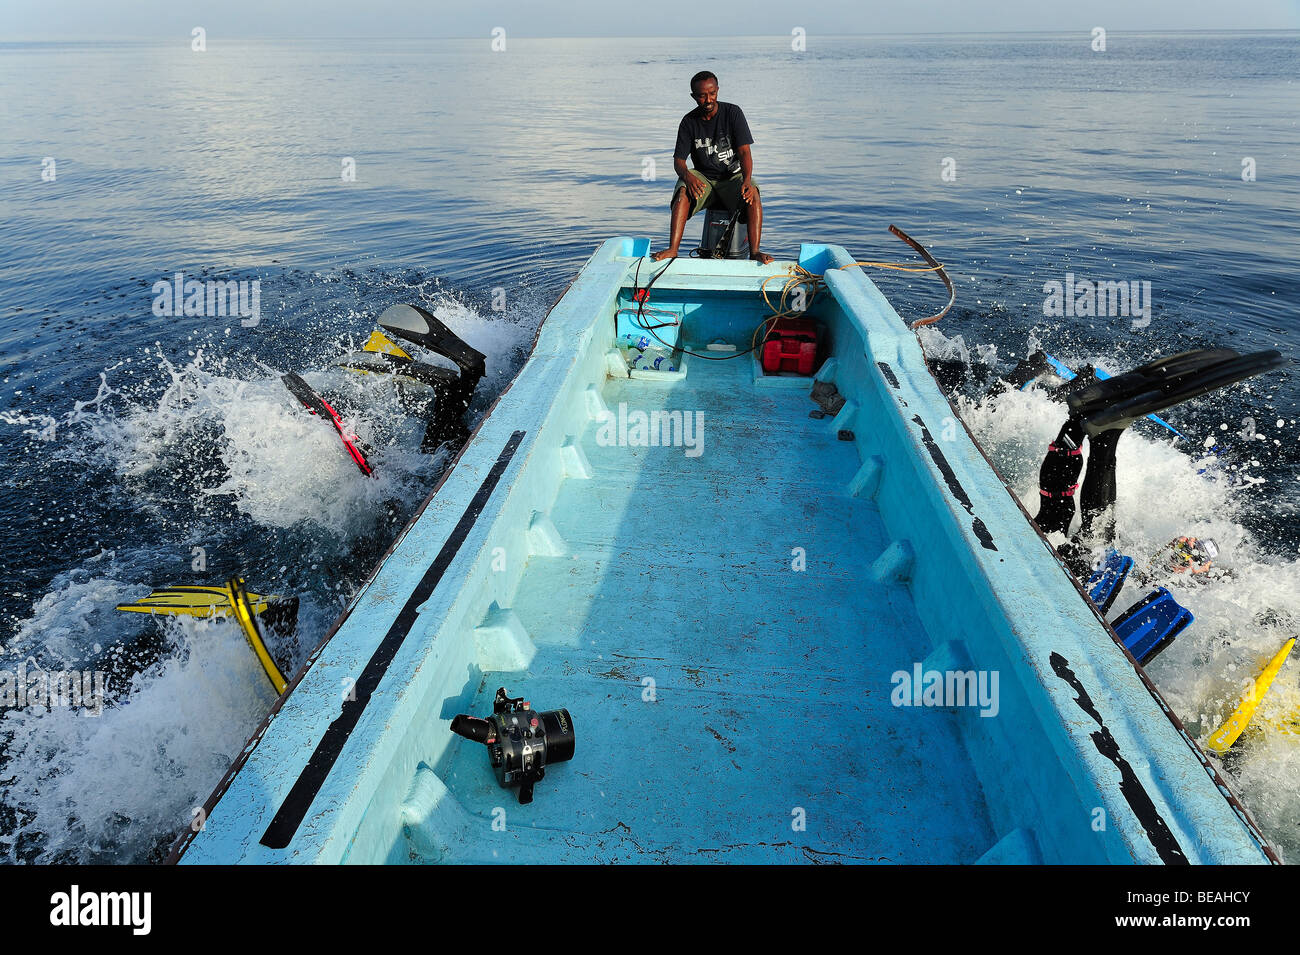 Groupe de plongeurs sous-marins dans la baie de Tadjourah, golfe d'Aden Banque D'Images